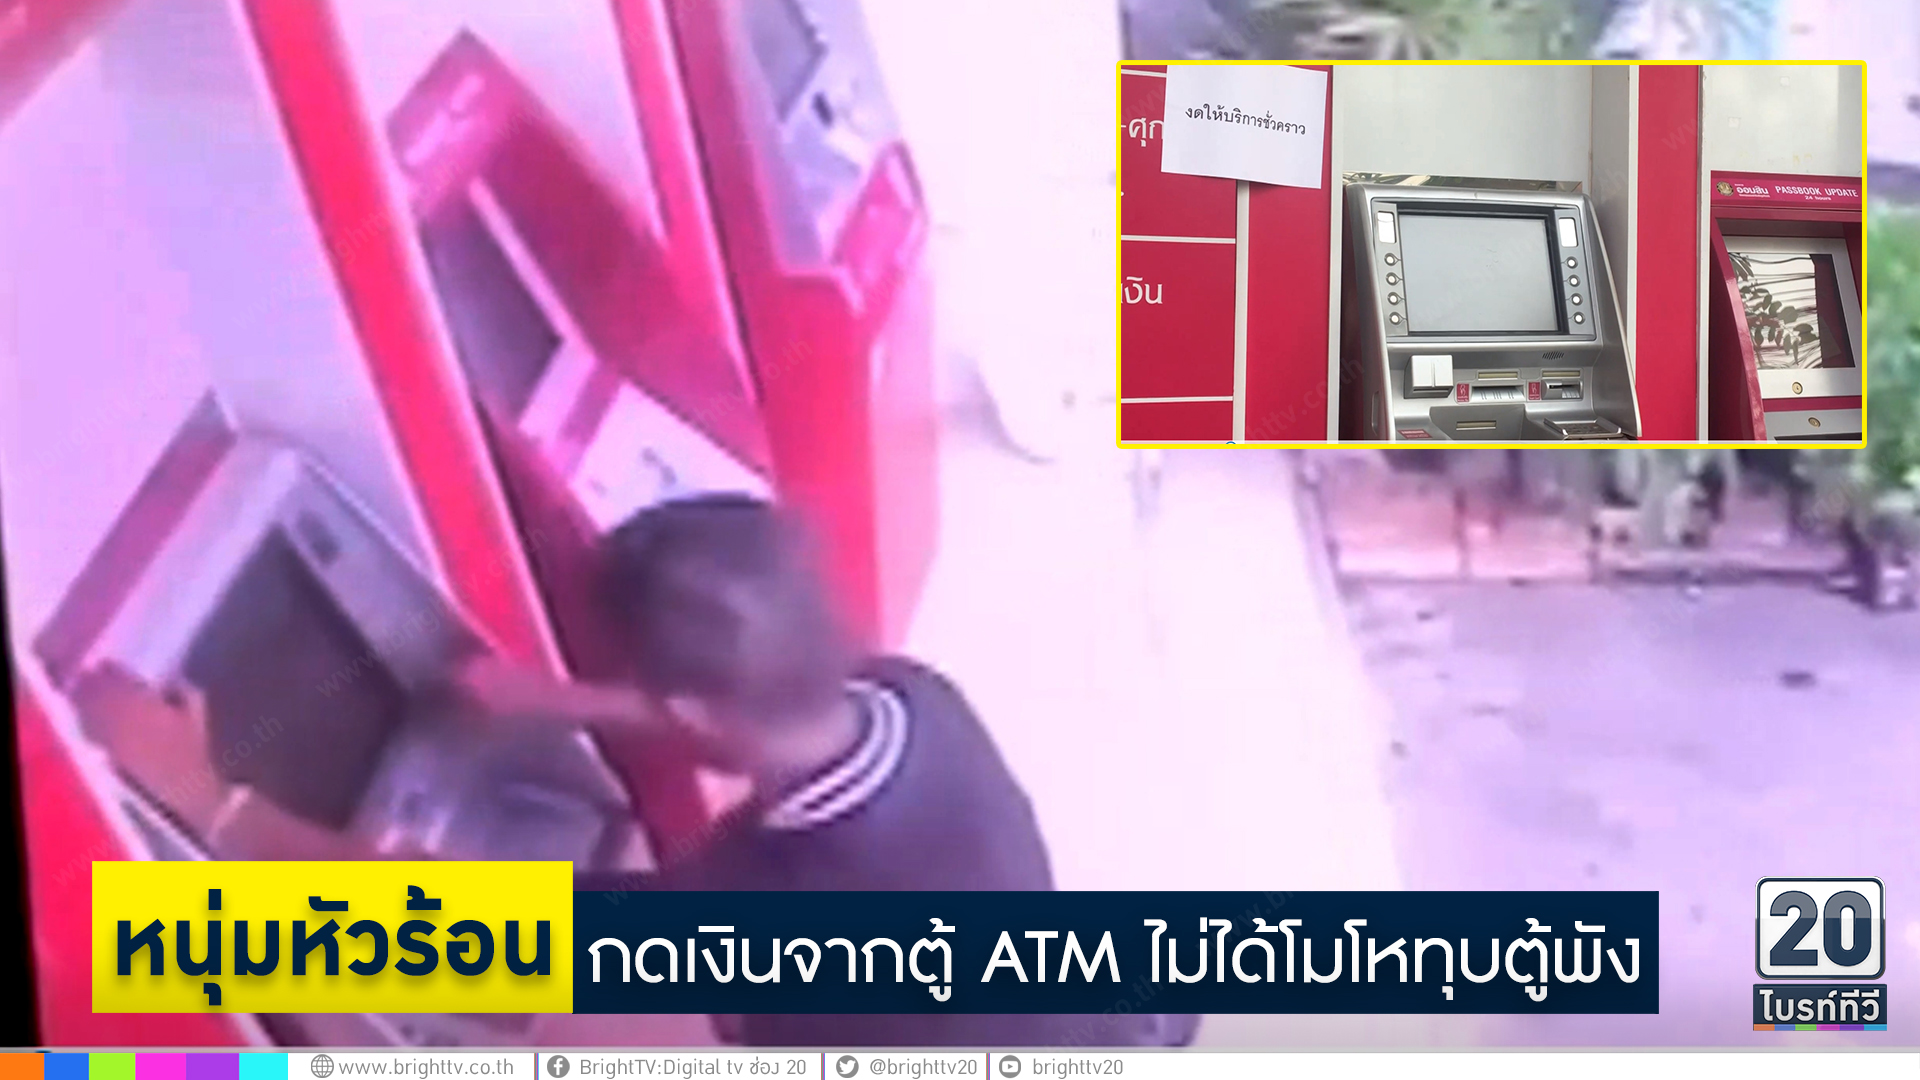 หนุ่มหัวร้อนกดเงินจากตู้ ATM ไม่ได้โมโหทุบตู้พัง